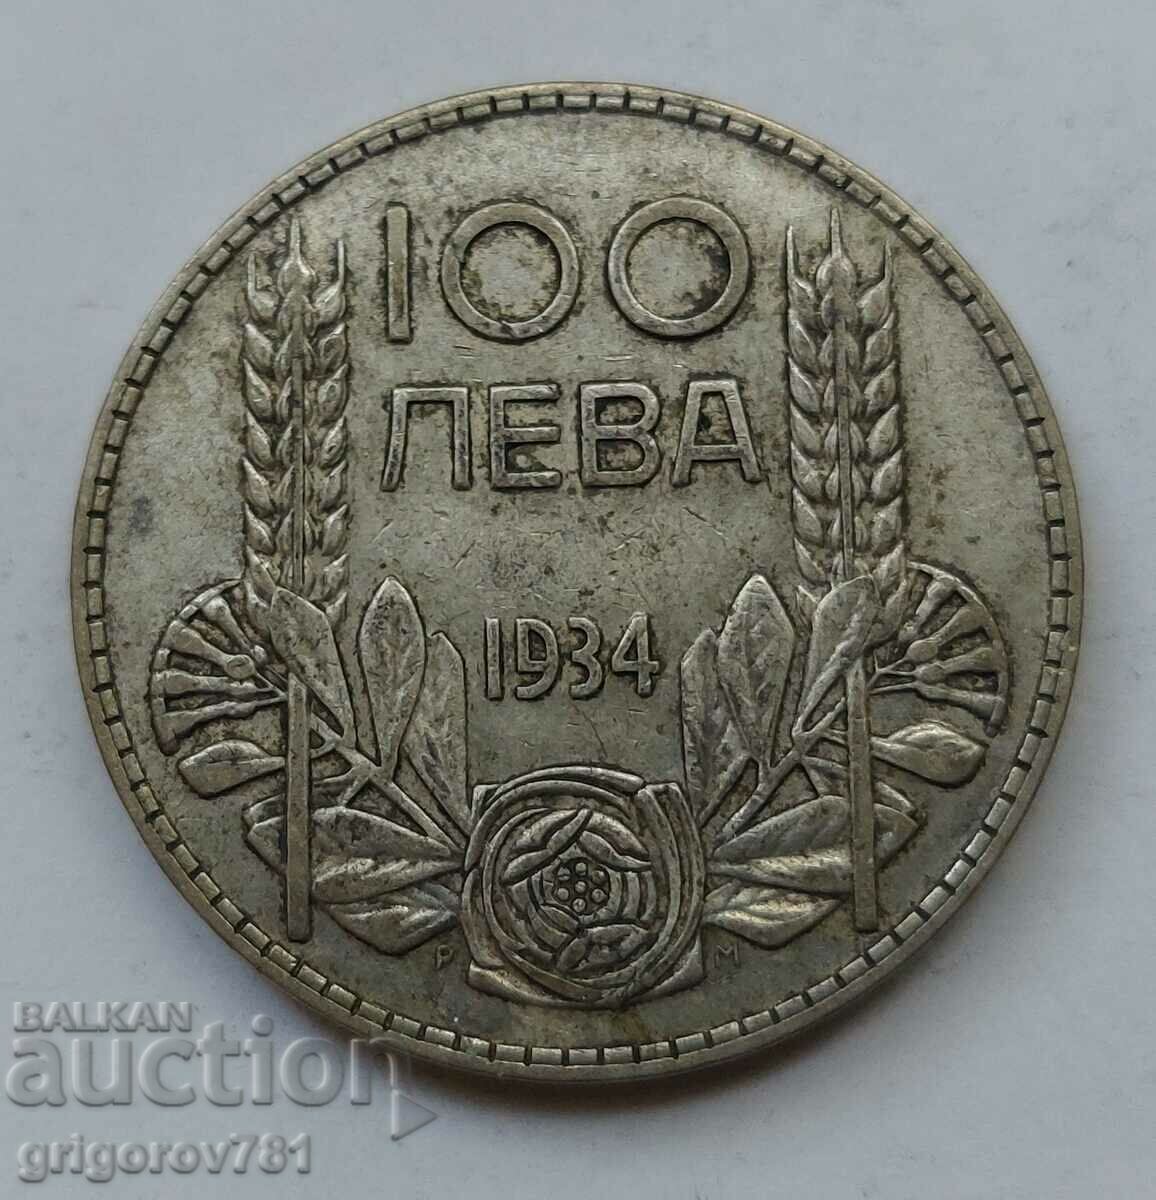 Ασήμι 100 λέβα Βουλγαρία 1934 - ασημένιο νόμισμα #63